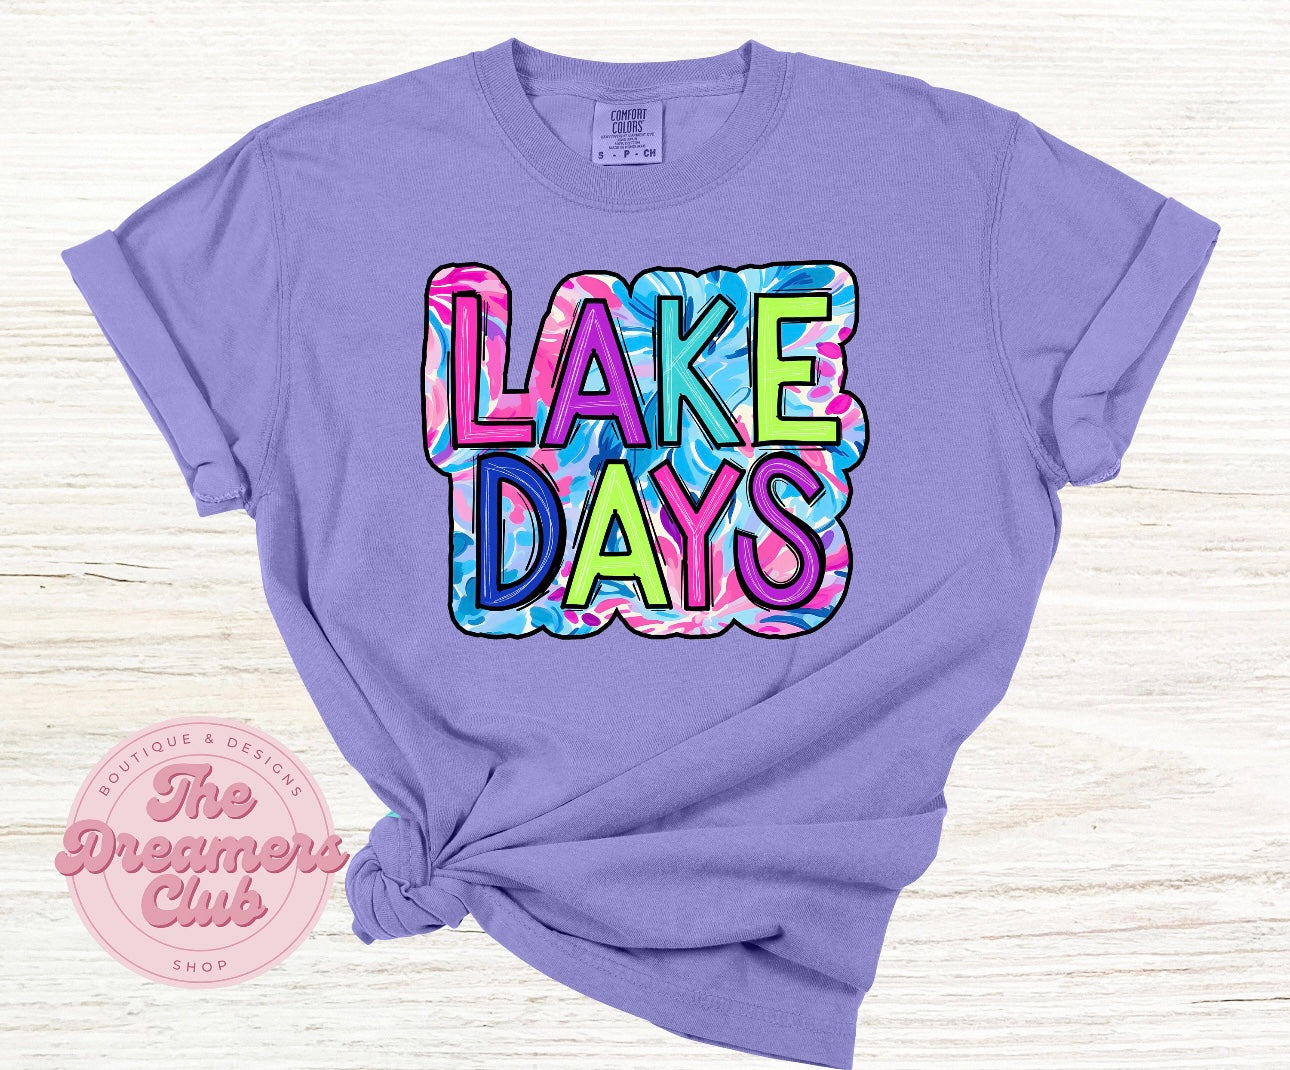 Lake days